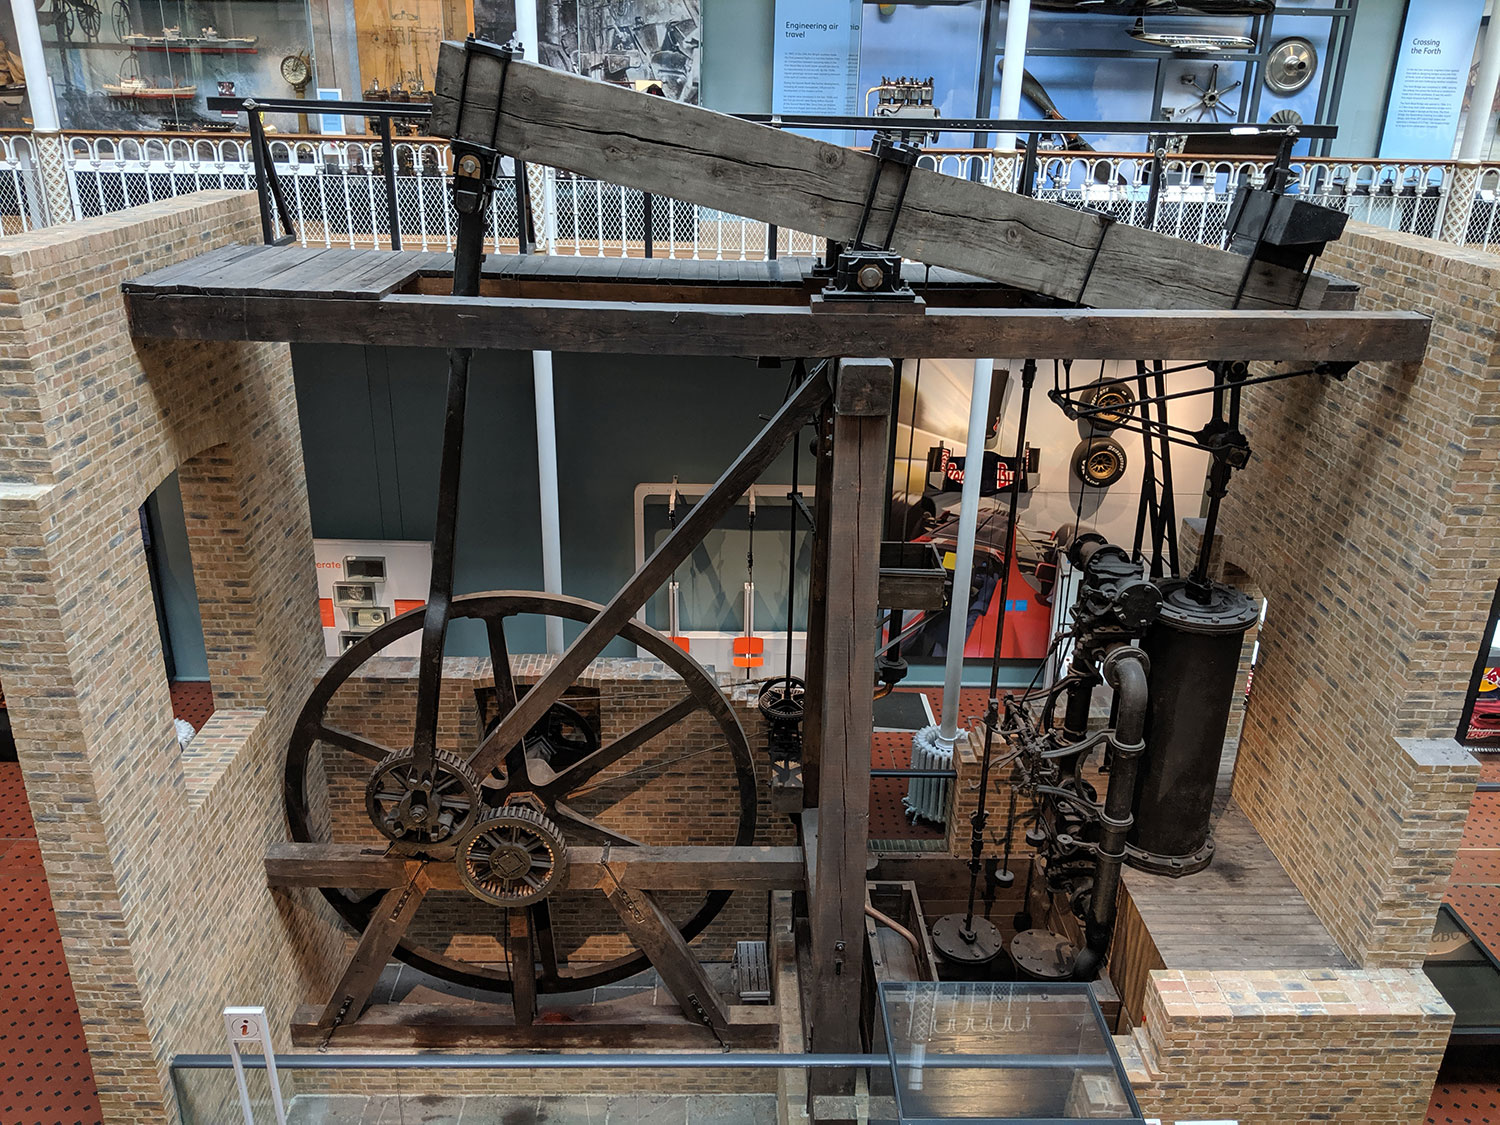 James Watt 2019: a double anniversary | National Museums Scotland Blog